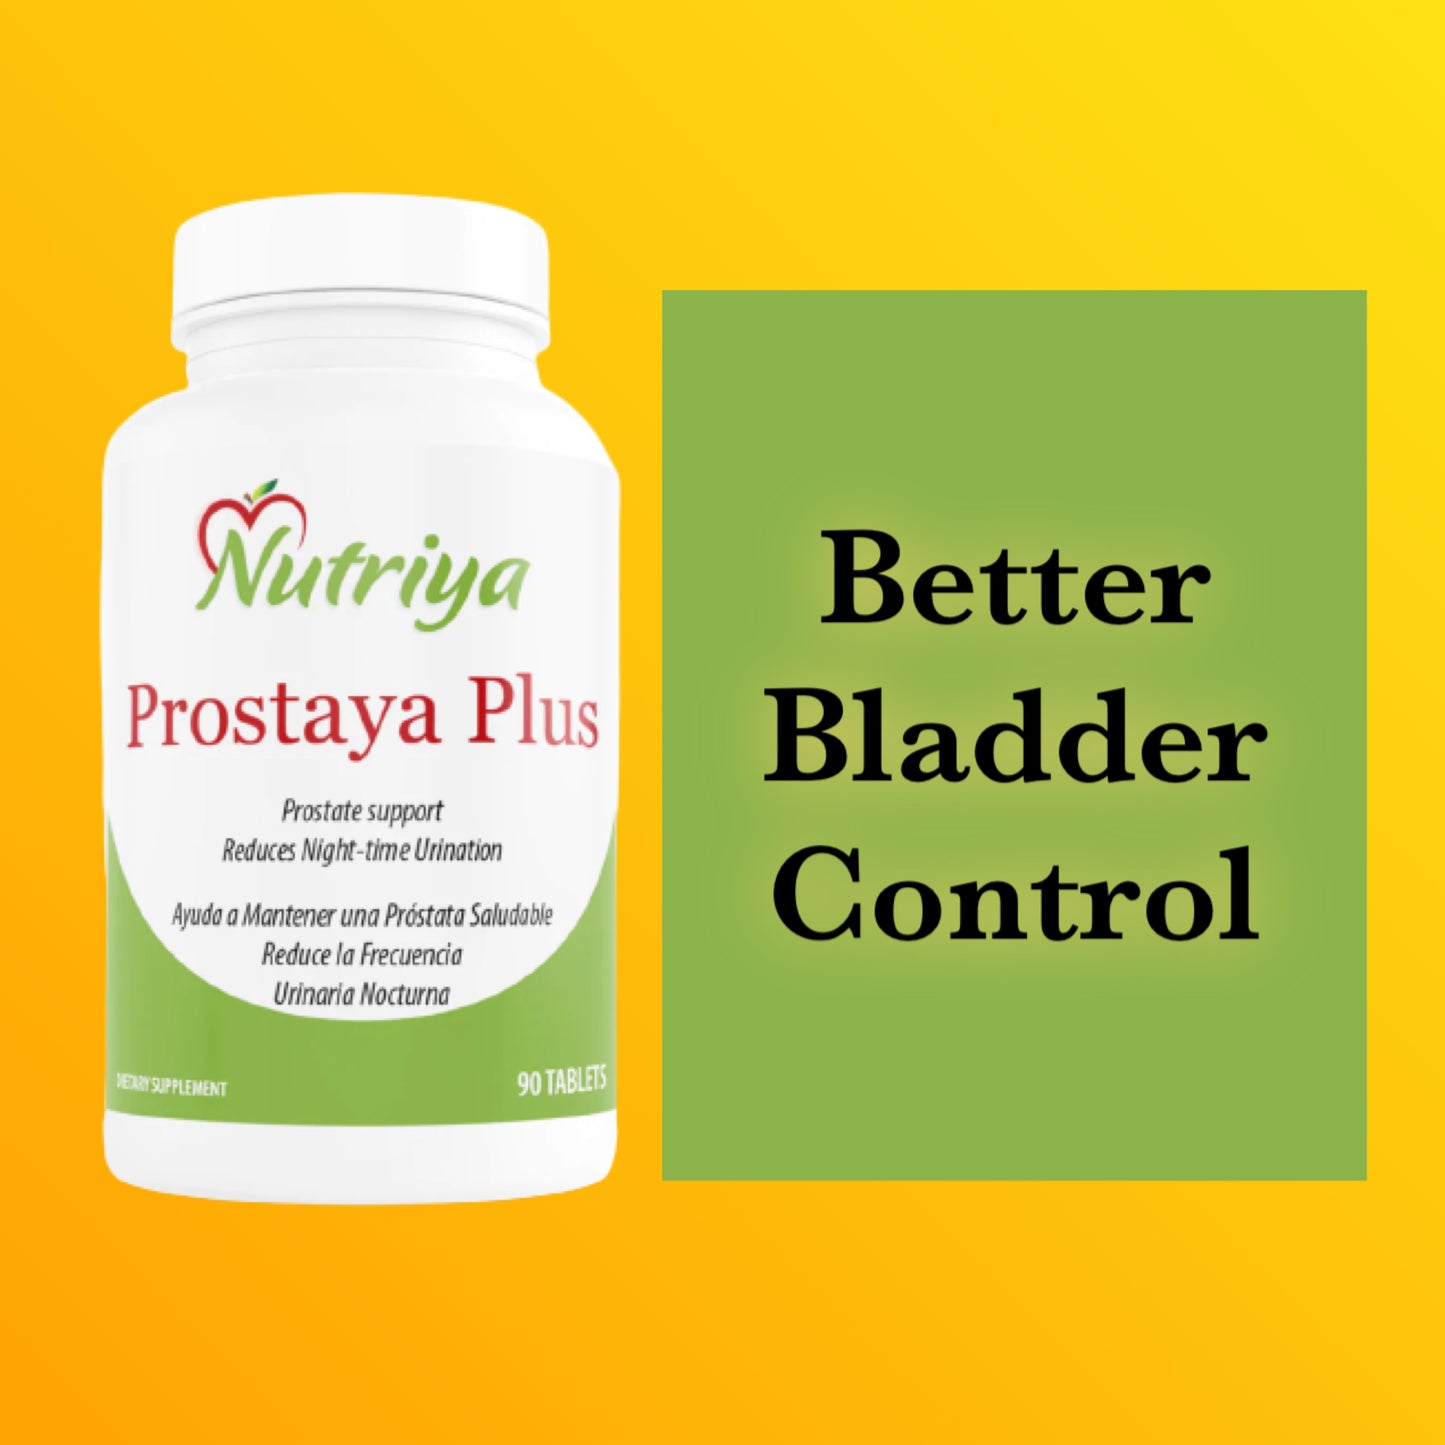 Prostaya Plus - Nutriya Prostaya Plus - Prostate & Bladder Support